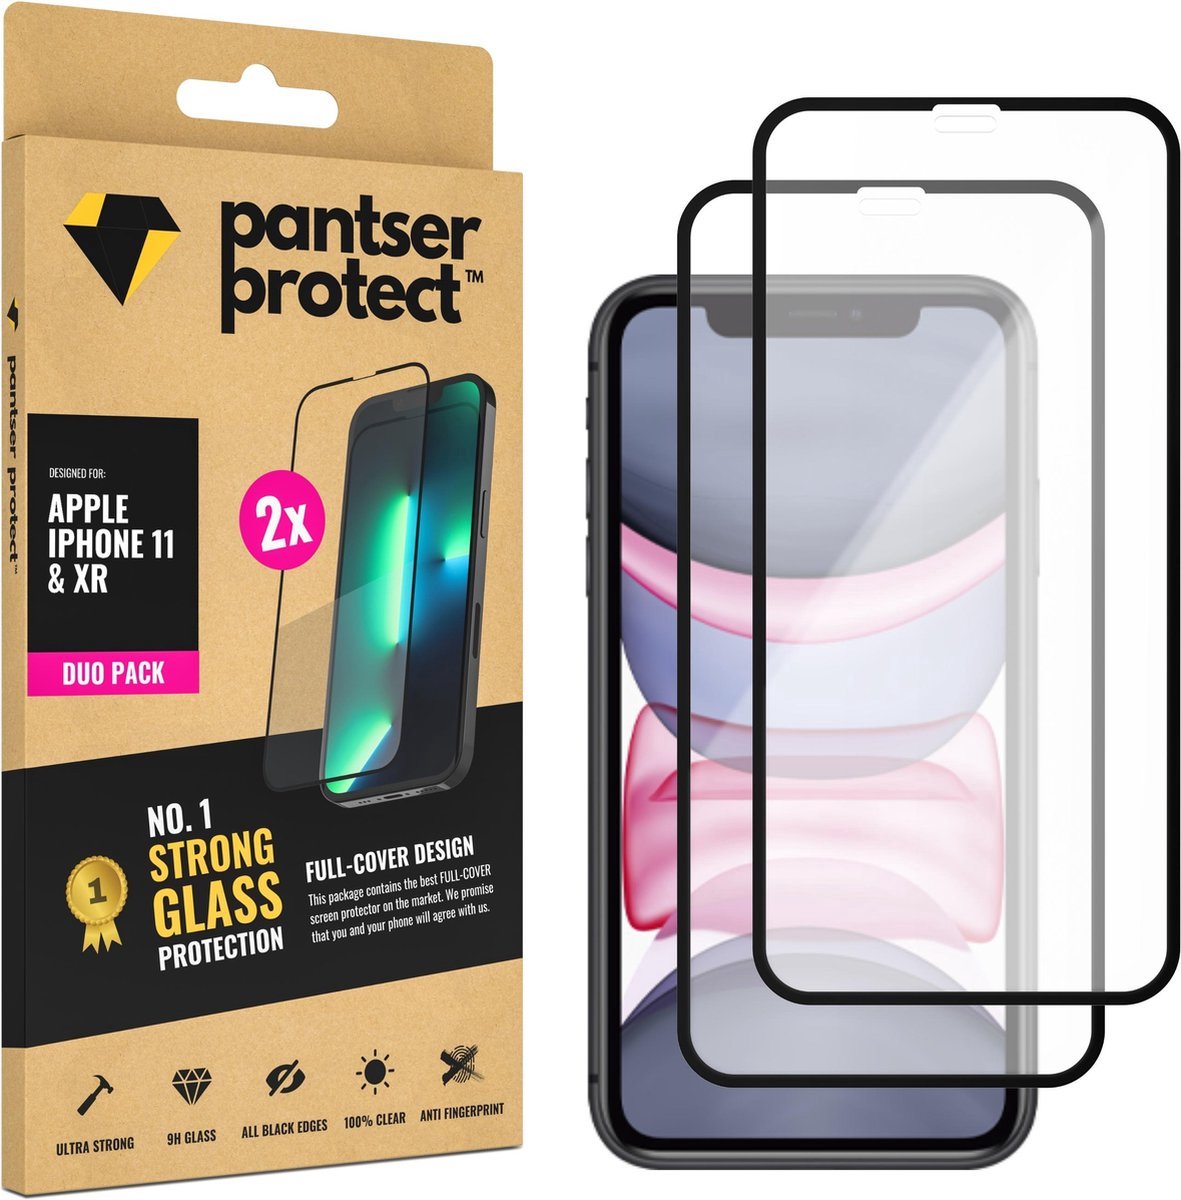 DUO-PACK - 2x Pantser Protect™ Glass Screenprotector Geschikt voor iPhone 11 / XR - Case Friendly - Premium Pantserglas - Glazen Screen Protector